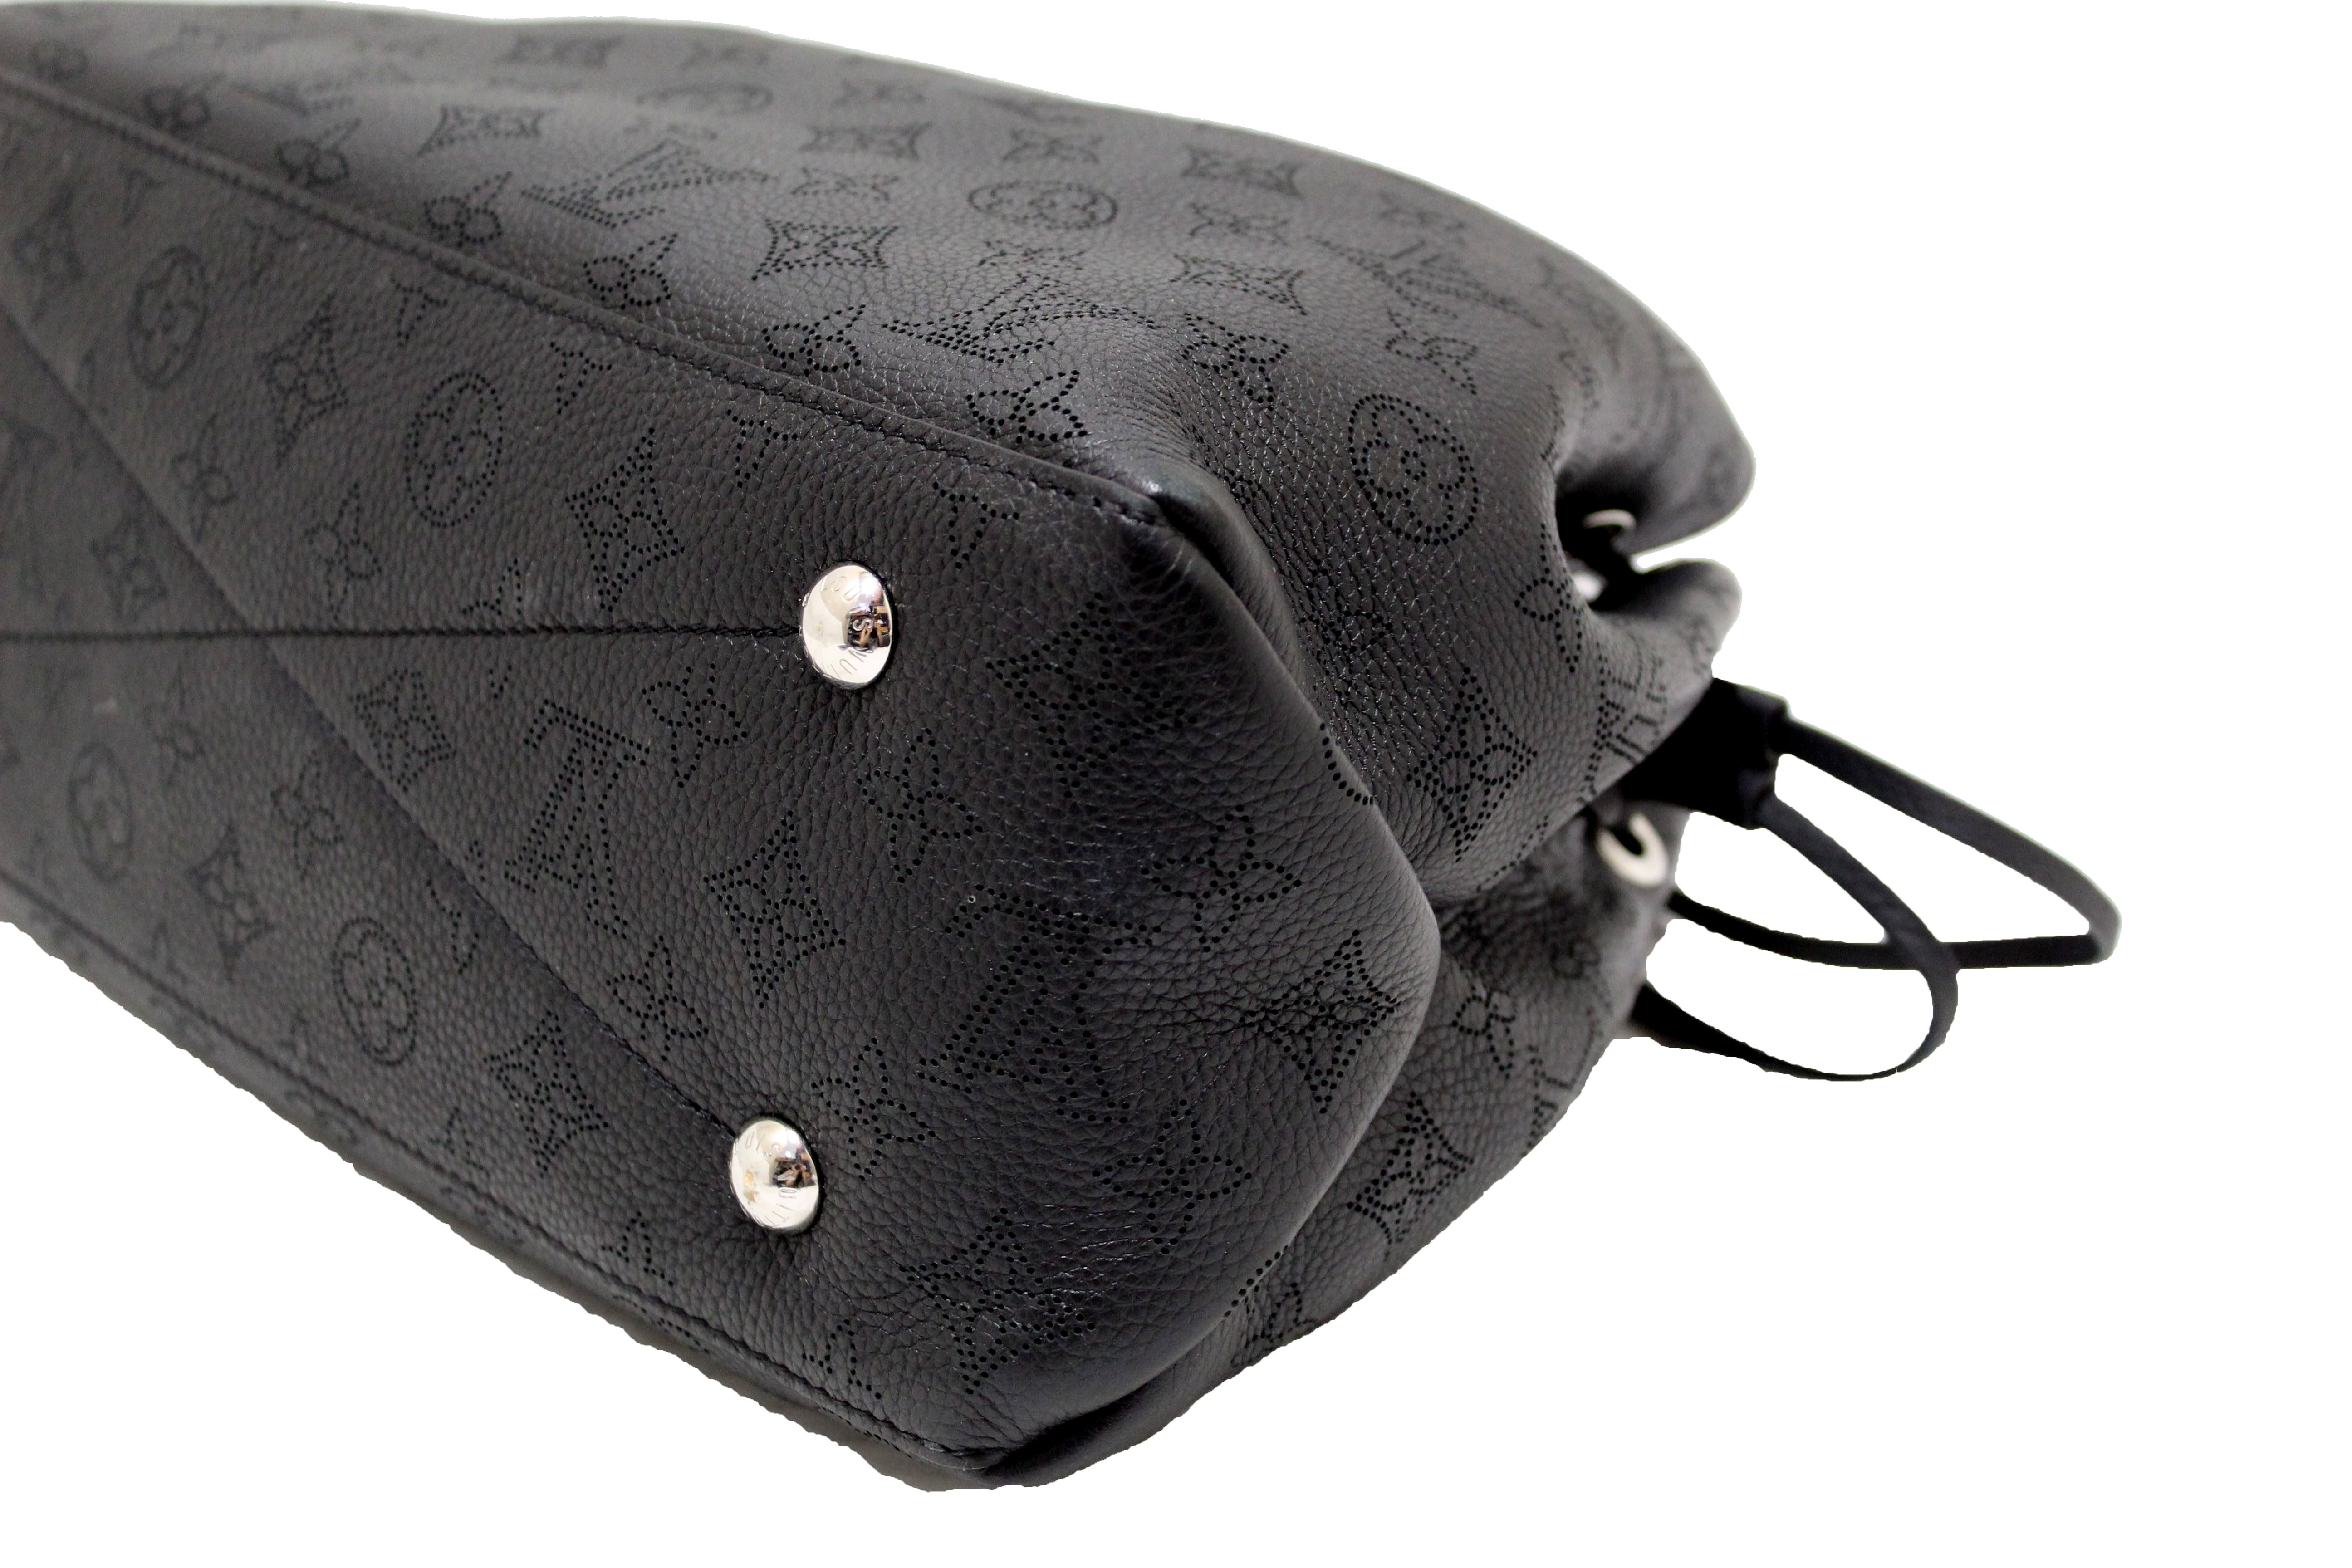 Authentic Louis Vuitton Mahina GM Monogram Empreinte Leather Shoulder Bag